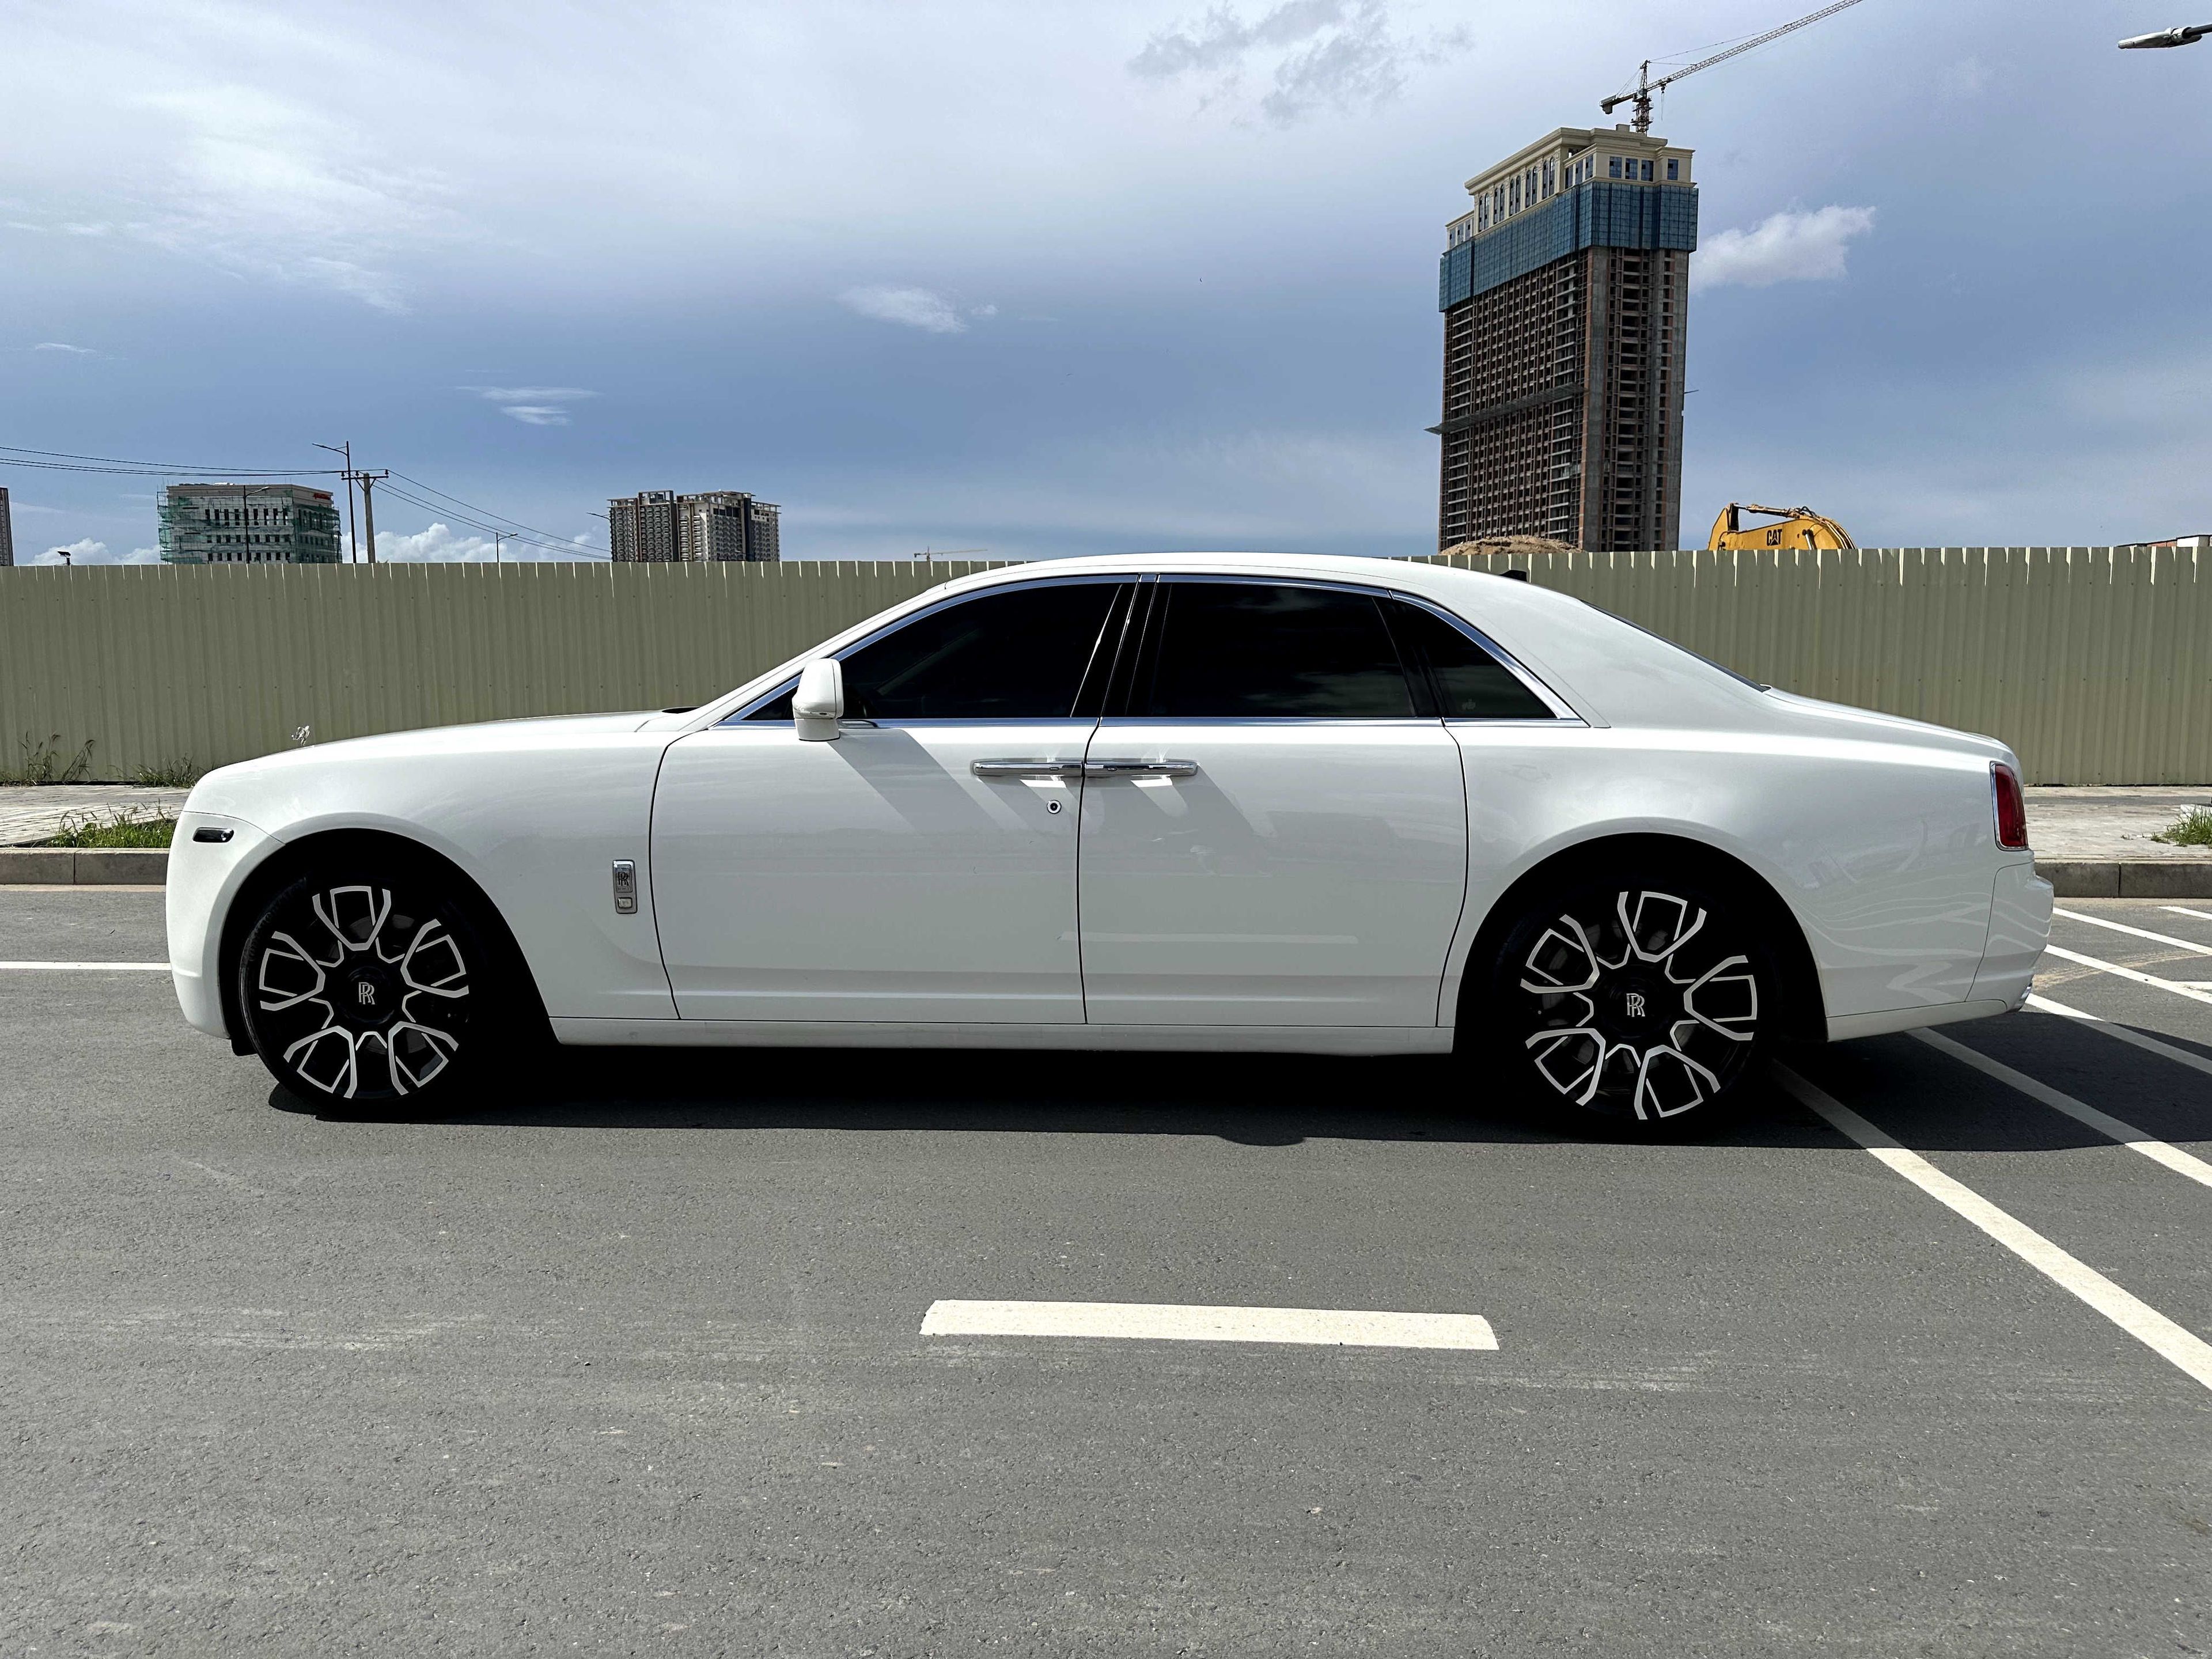 Rolls-Royce Ghost 2013